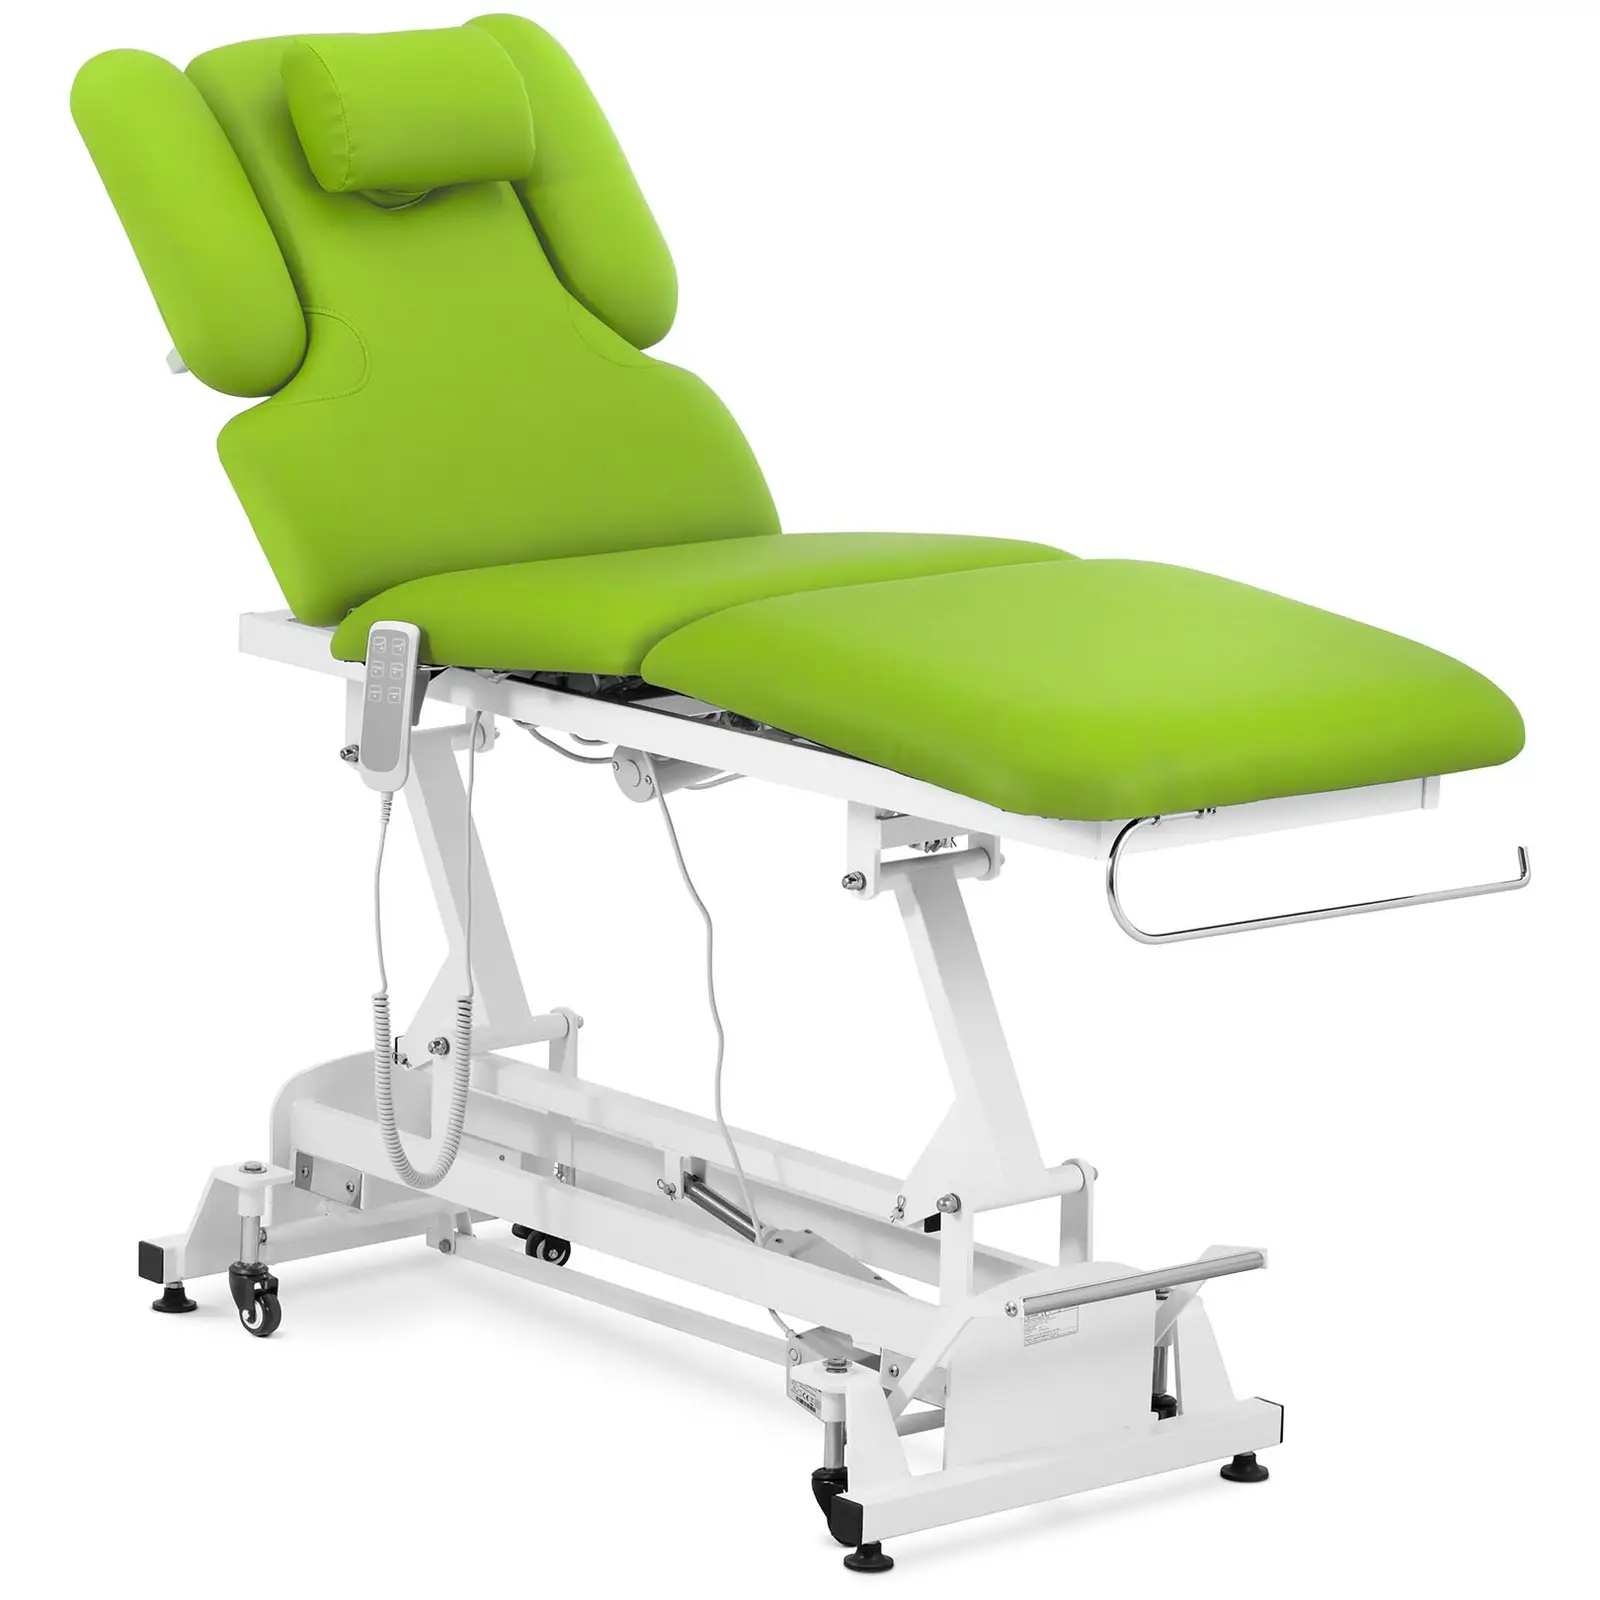 Stol za masažu - 3 motora - 250 kg - svijetlozelen